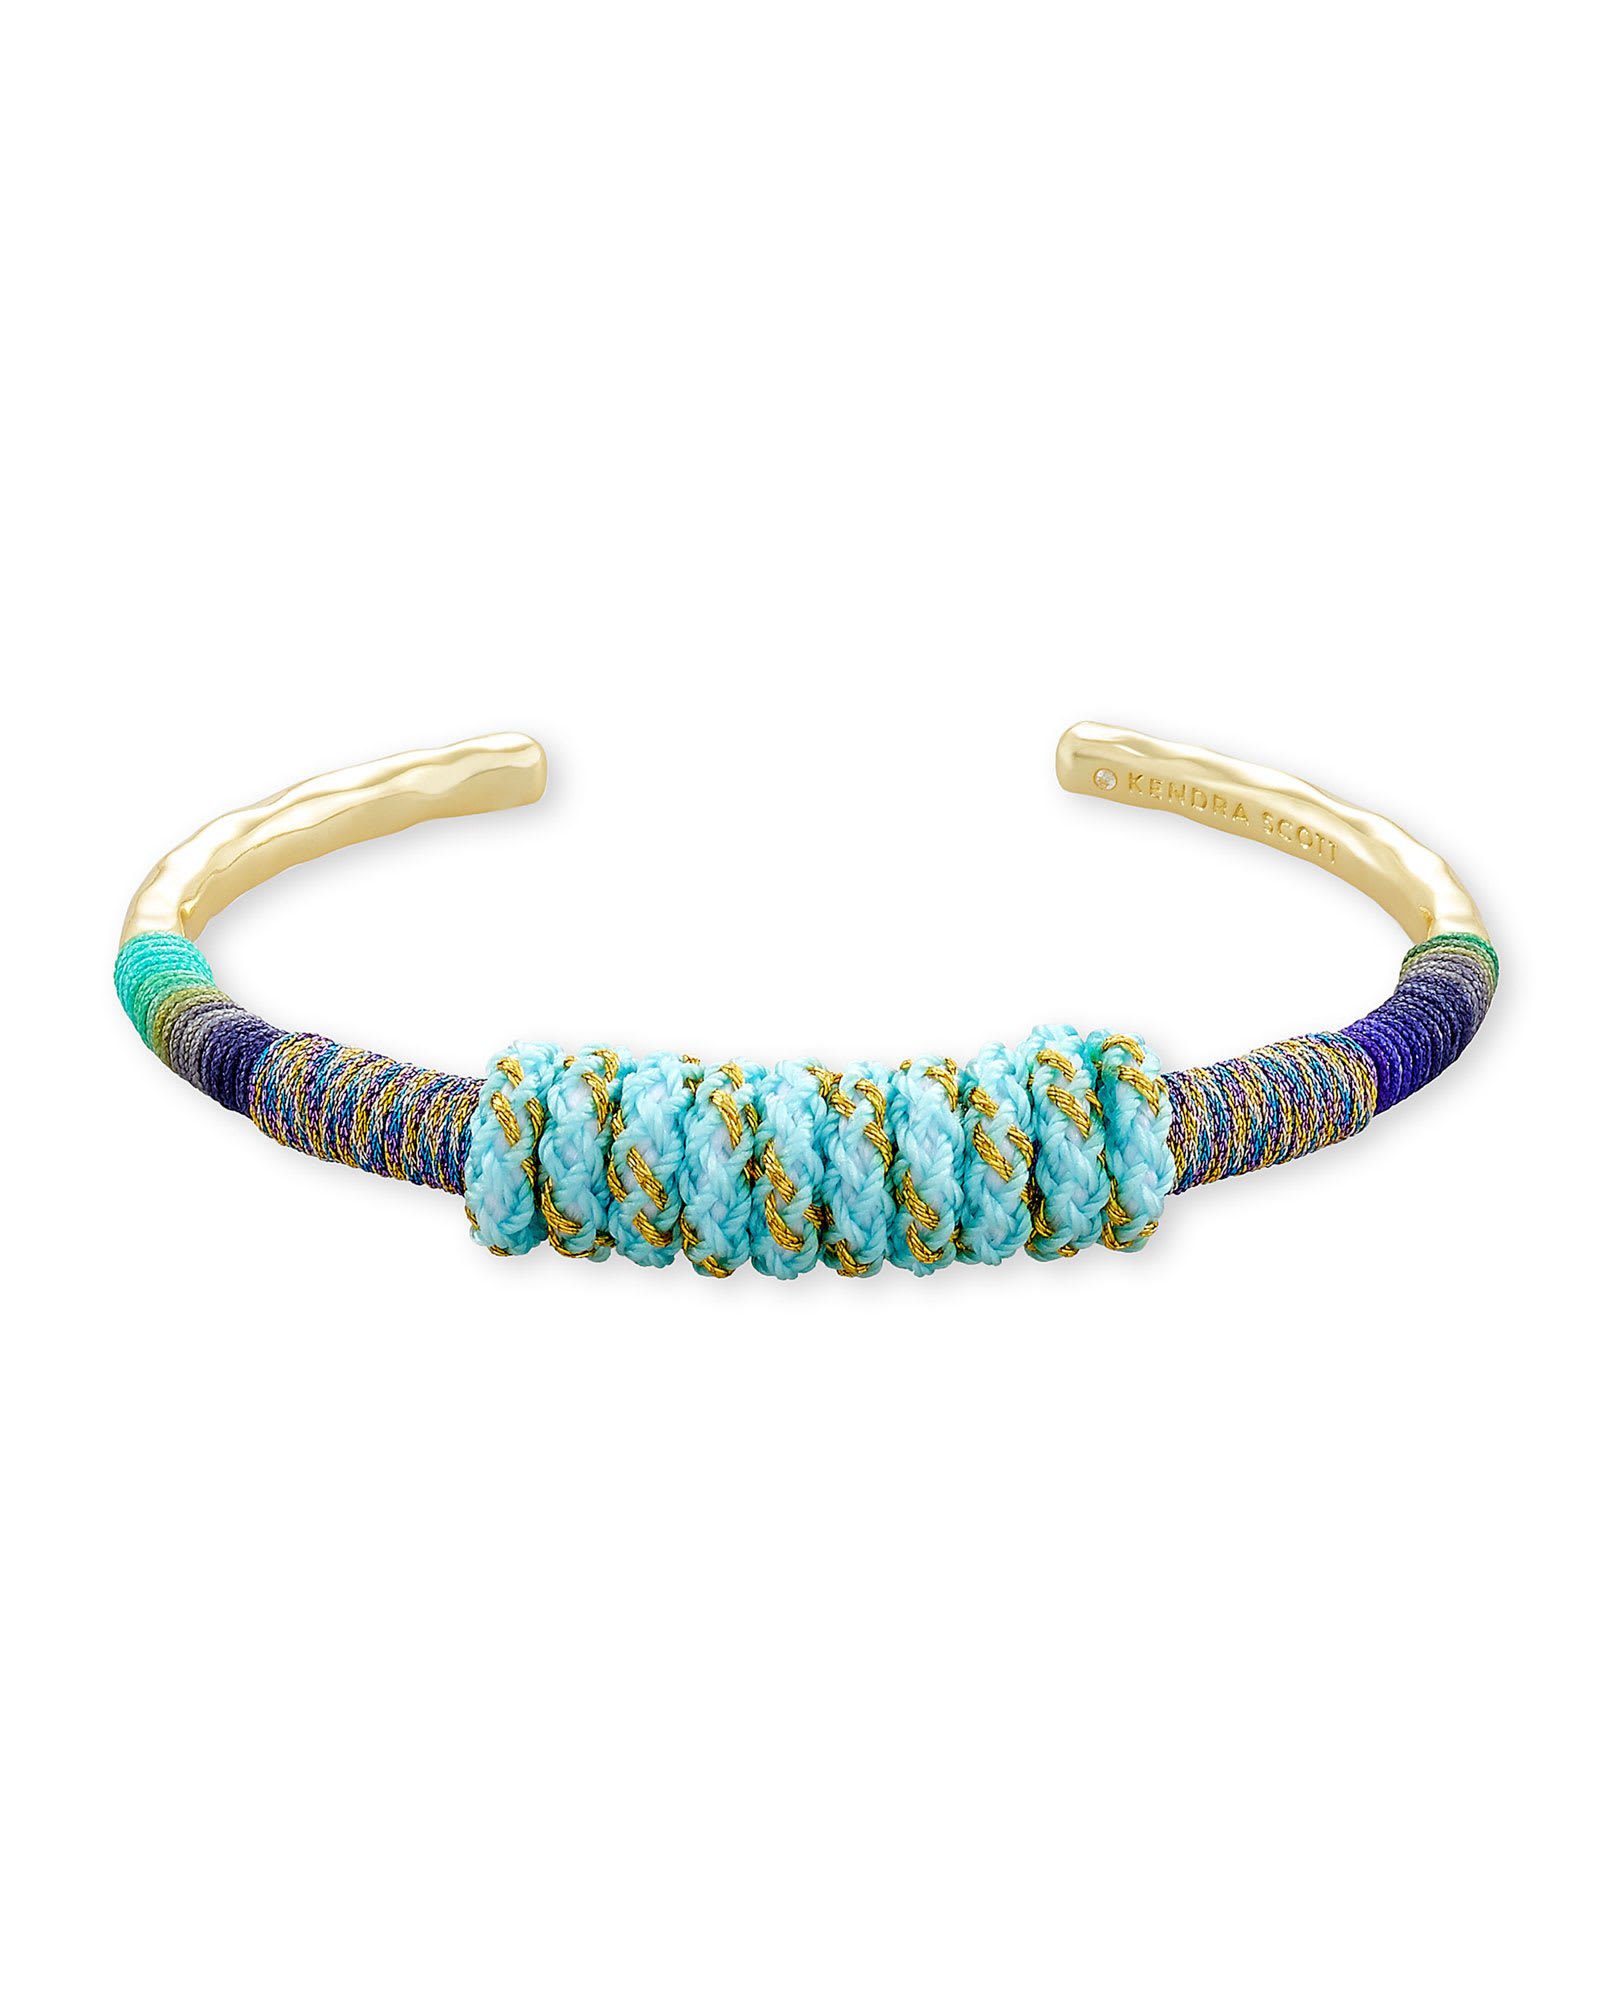 Kendra Scott Masie Gold Cuff Bracelet in Mint Mix Para | Cord